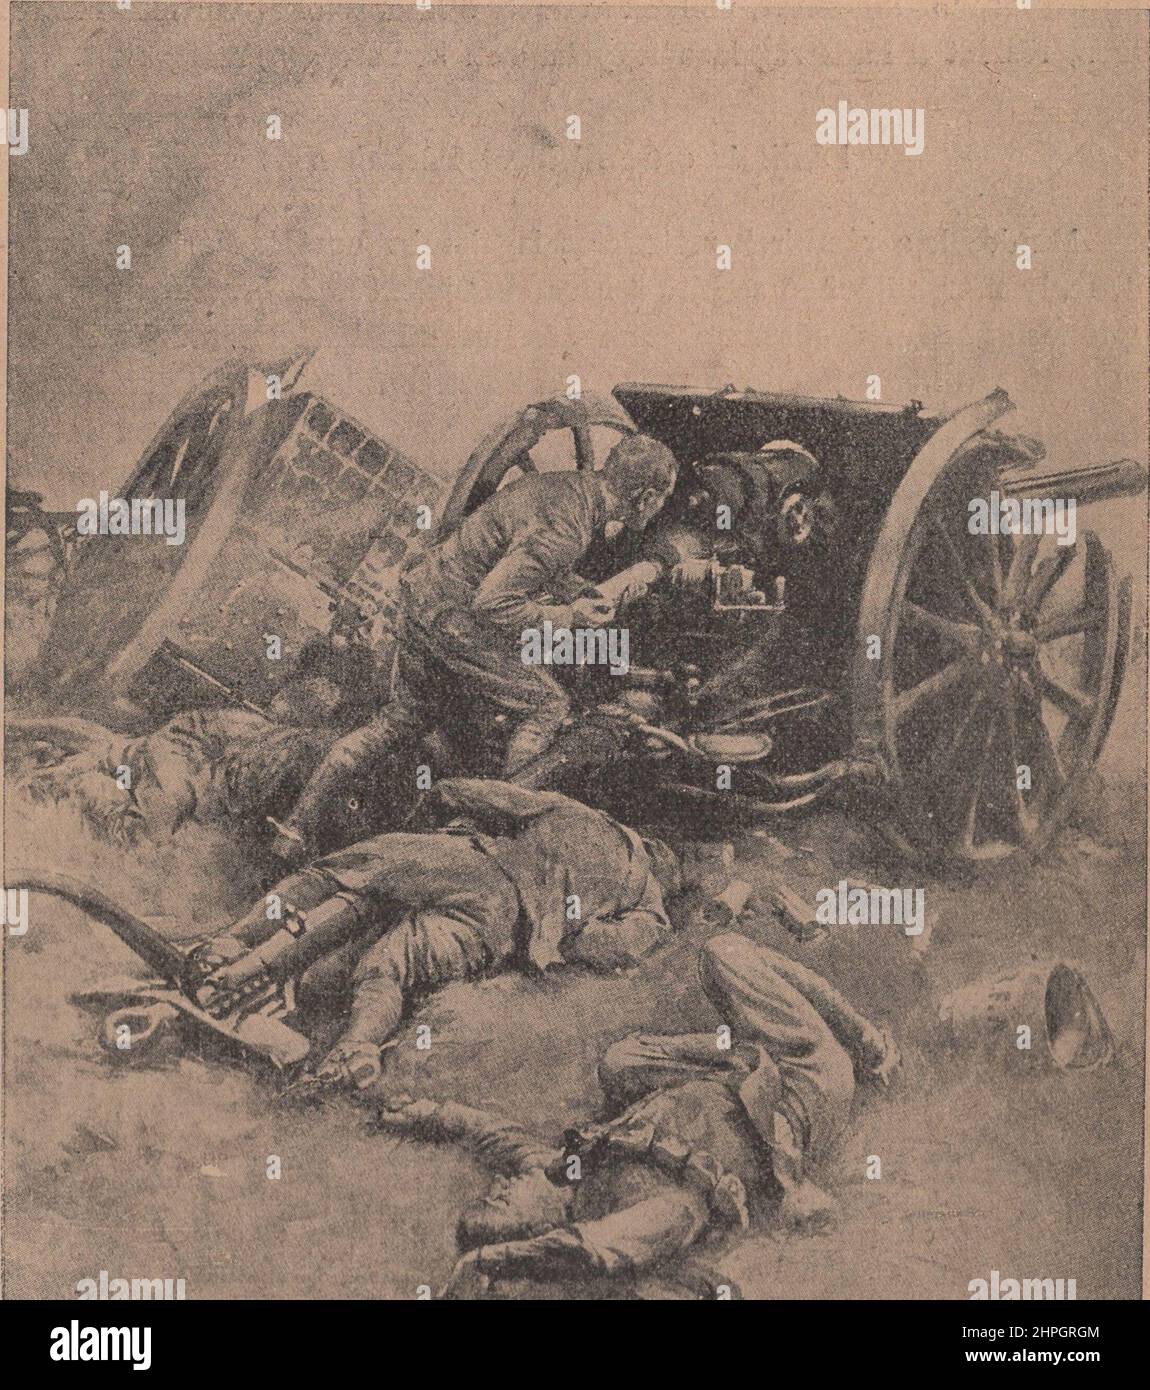 El último cañón inglés se fue porque los alemanes tiraron los cañones ingleses, ilustración de un artista desconocido. DERECHOS-ADICIONALES-AUTORIZACIÓN-INFORMACIÓN-NO-DISPONIBLE Y CADUCADO. Foto de stock